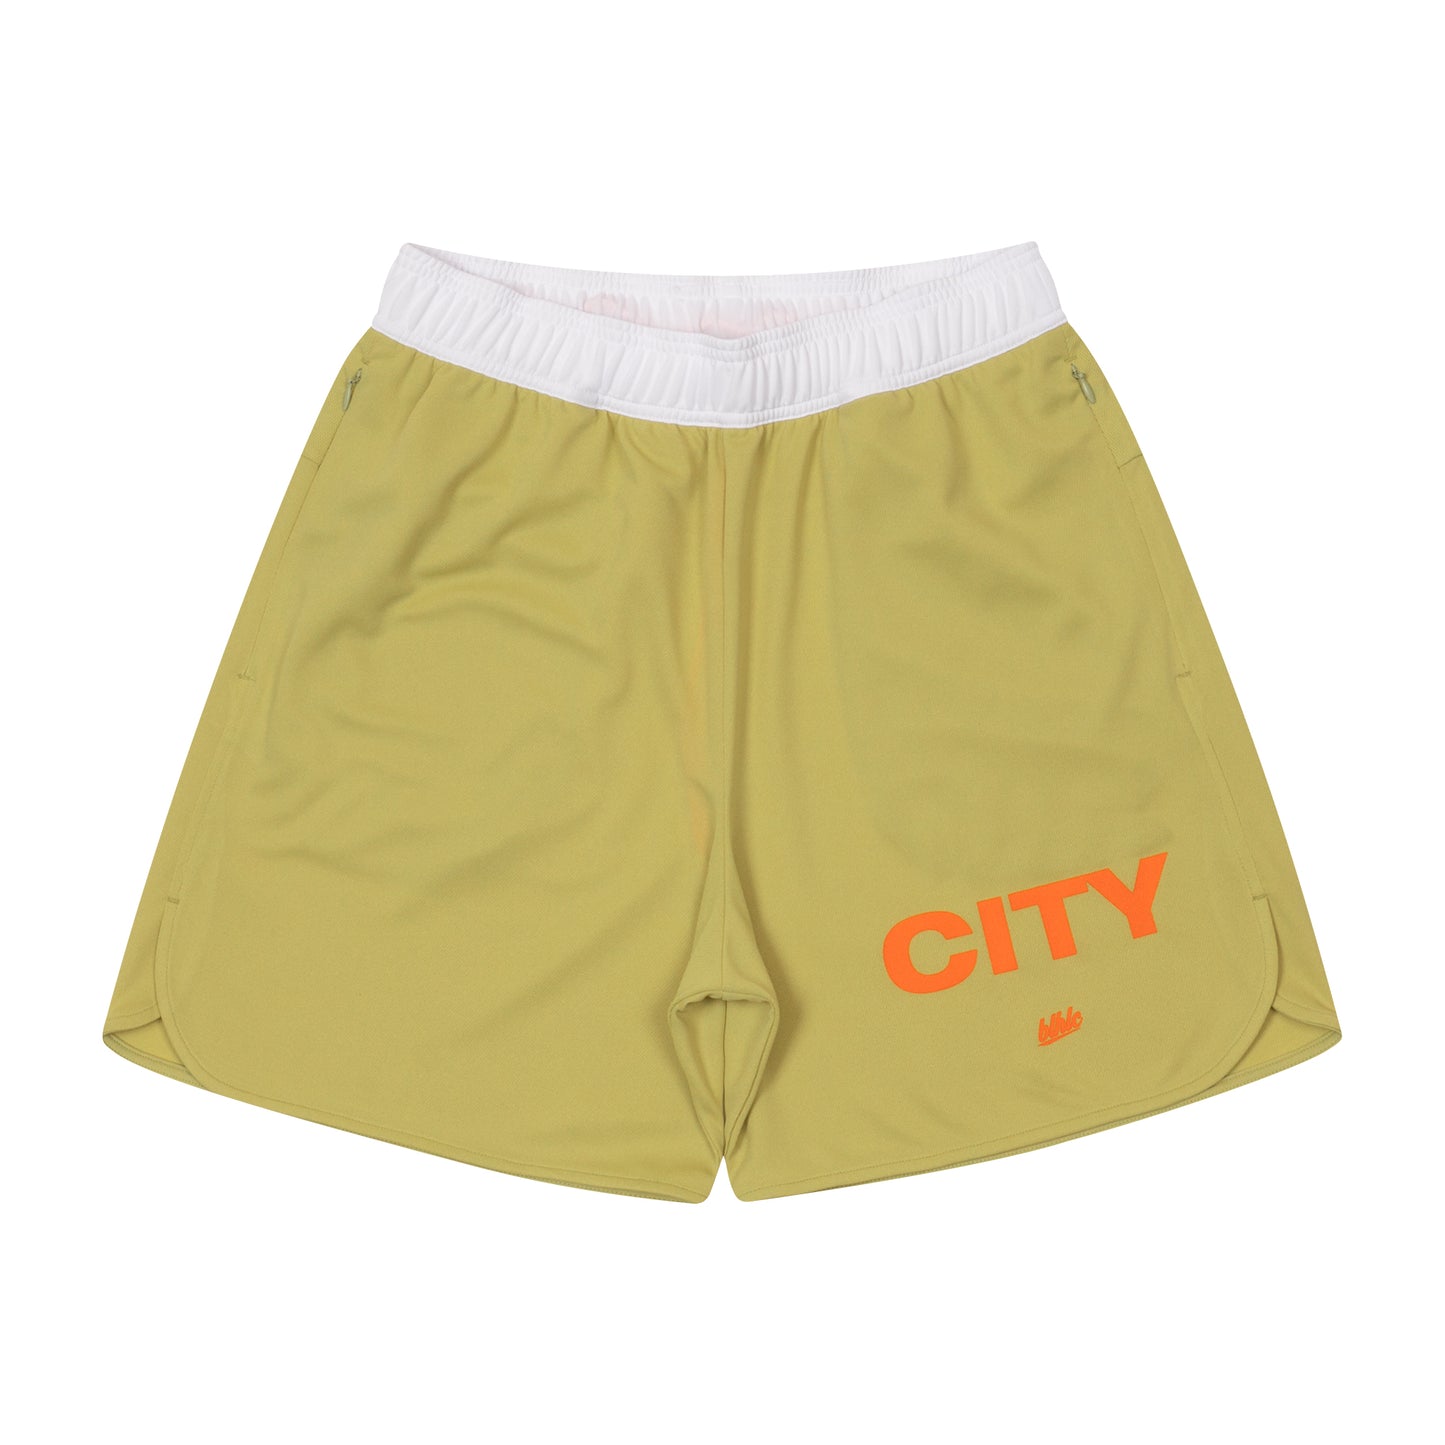 MY CITY Zip Shorts (beige)